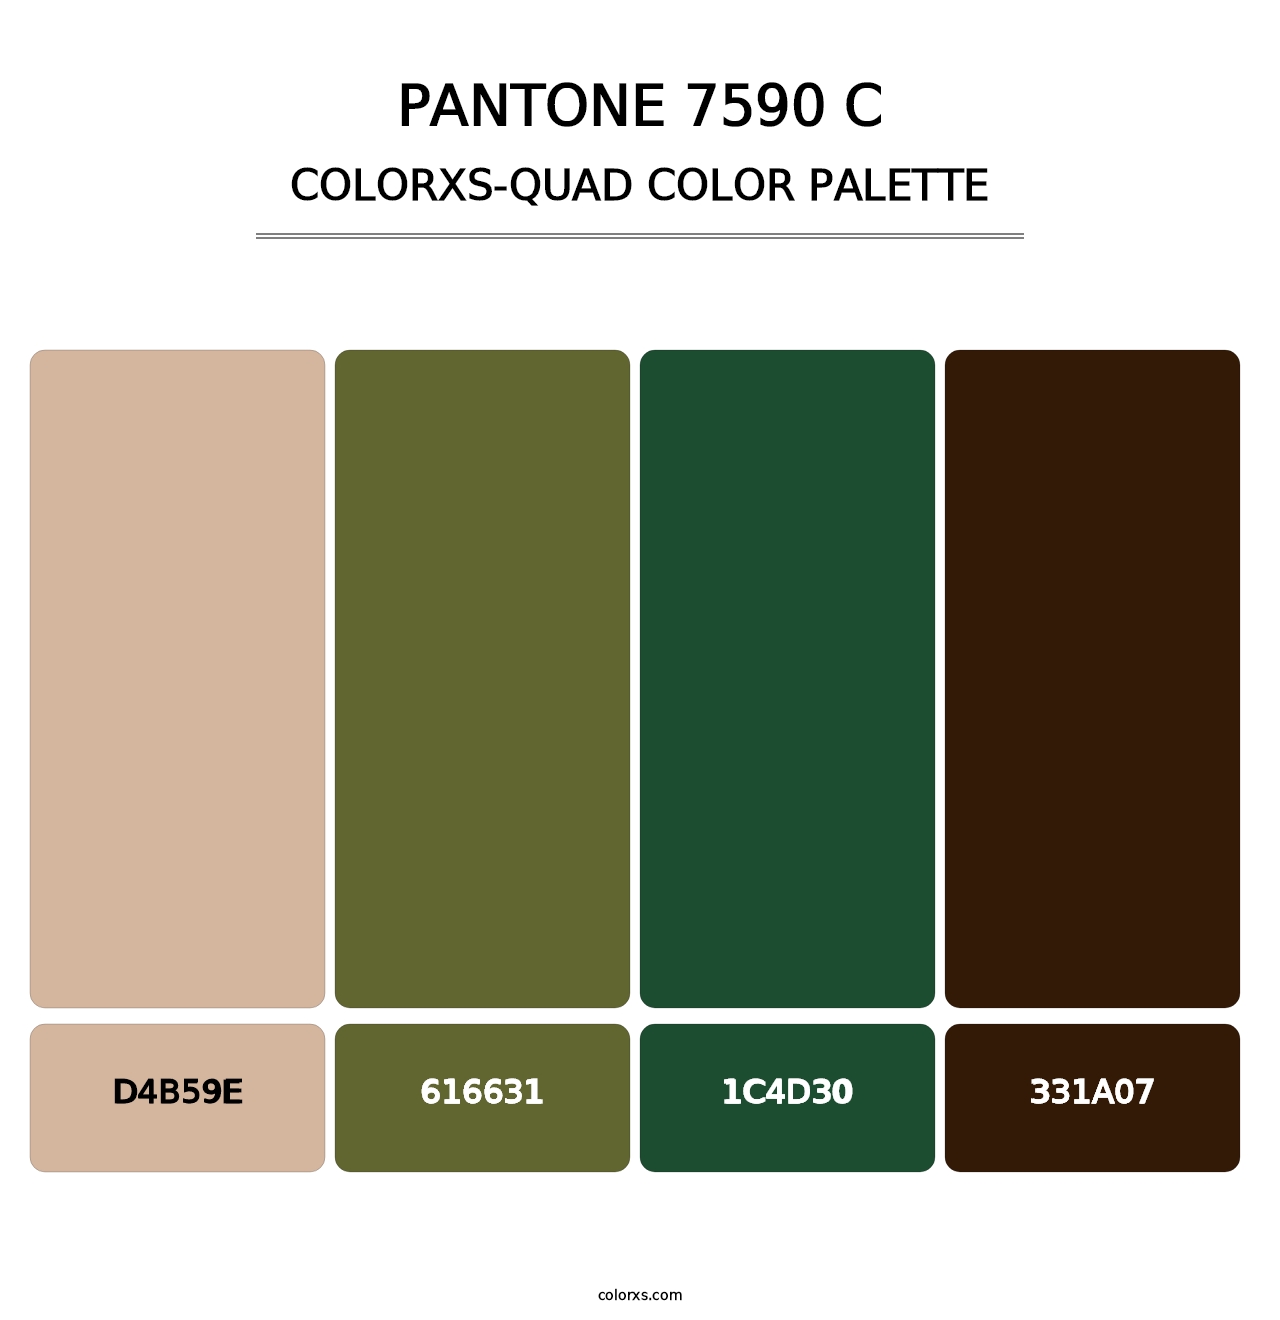 PANTONE 7590 C - Colorxs Quad Palette